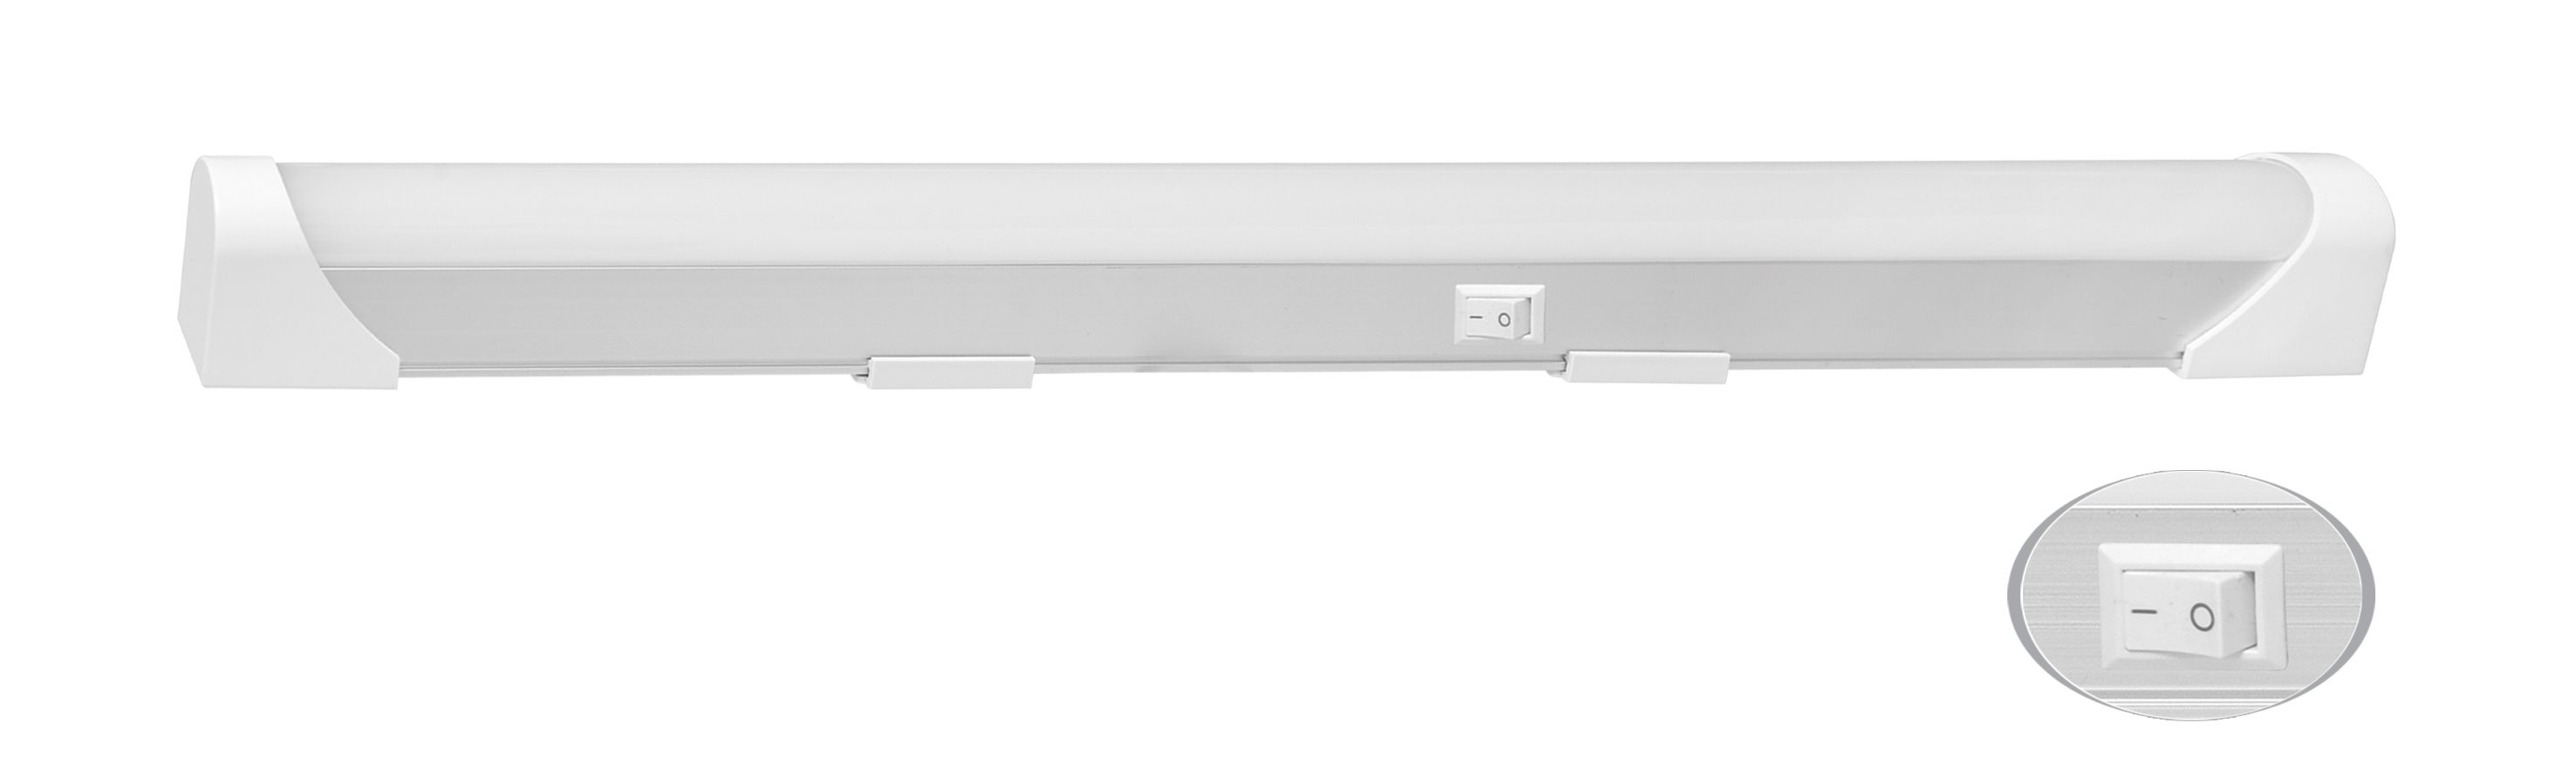 Kuchynské LED svietidlo 10W, 850lm, 60cm, strieborné